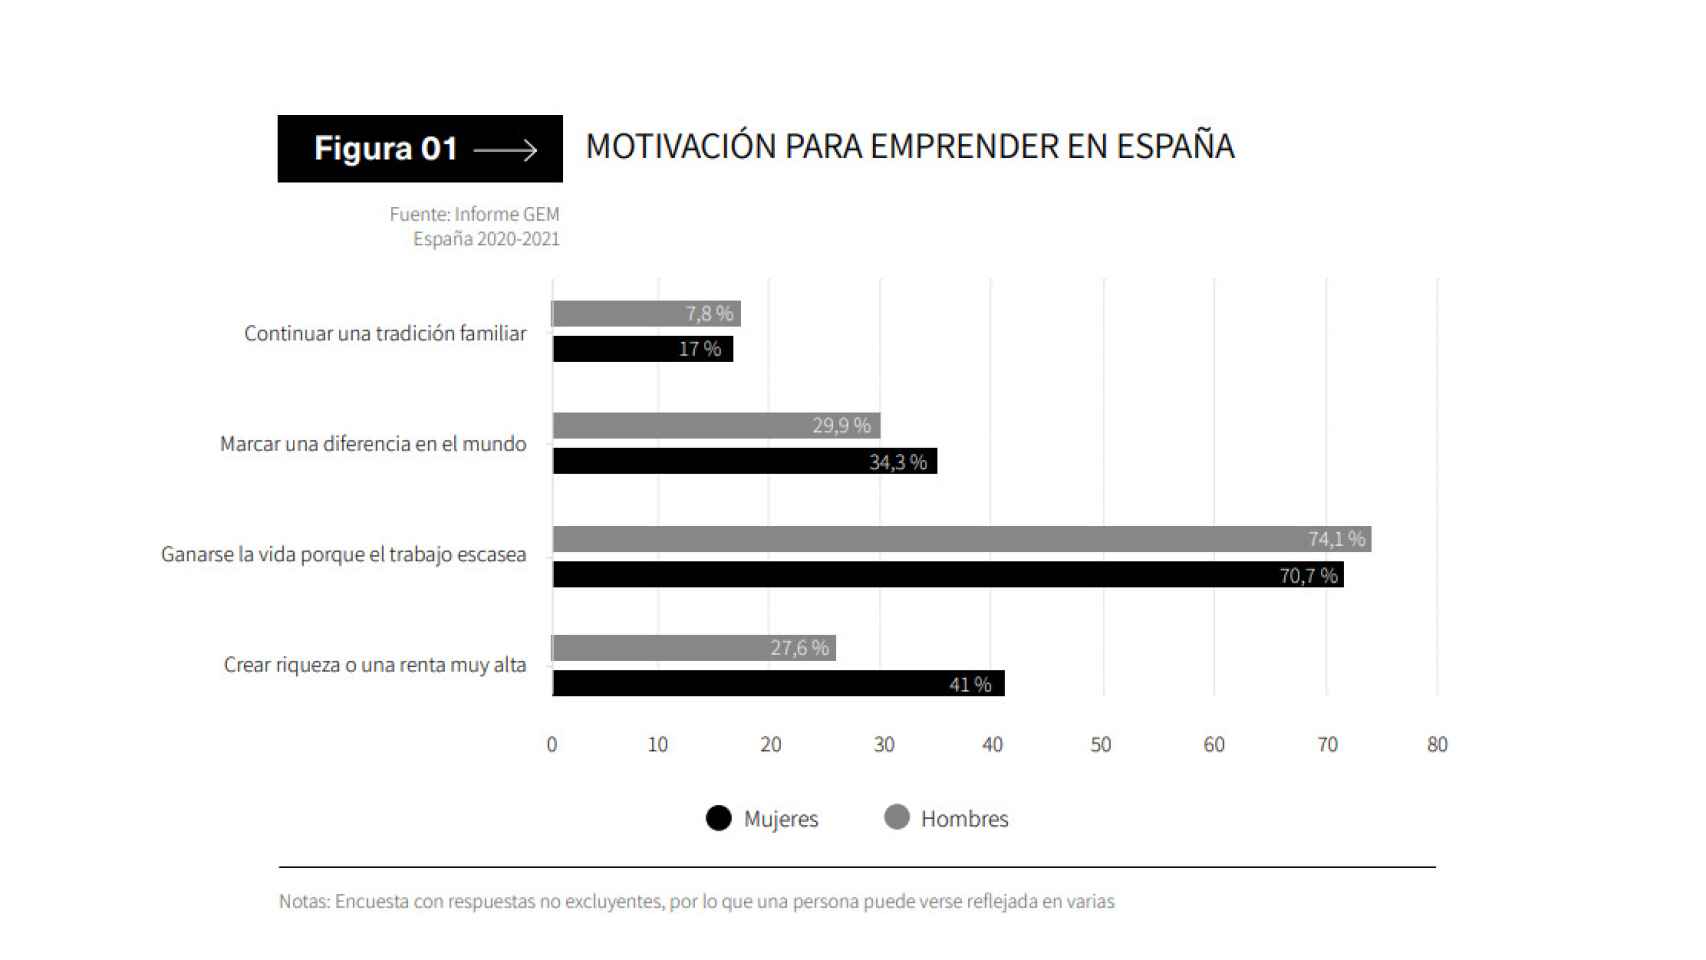 Motivaciones para emprender en España según el informe de OBS.